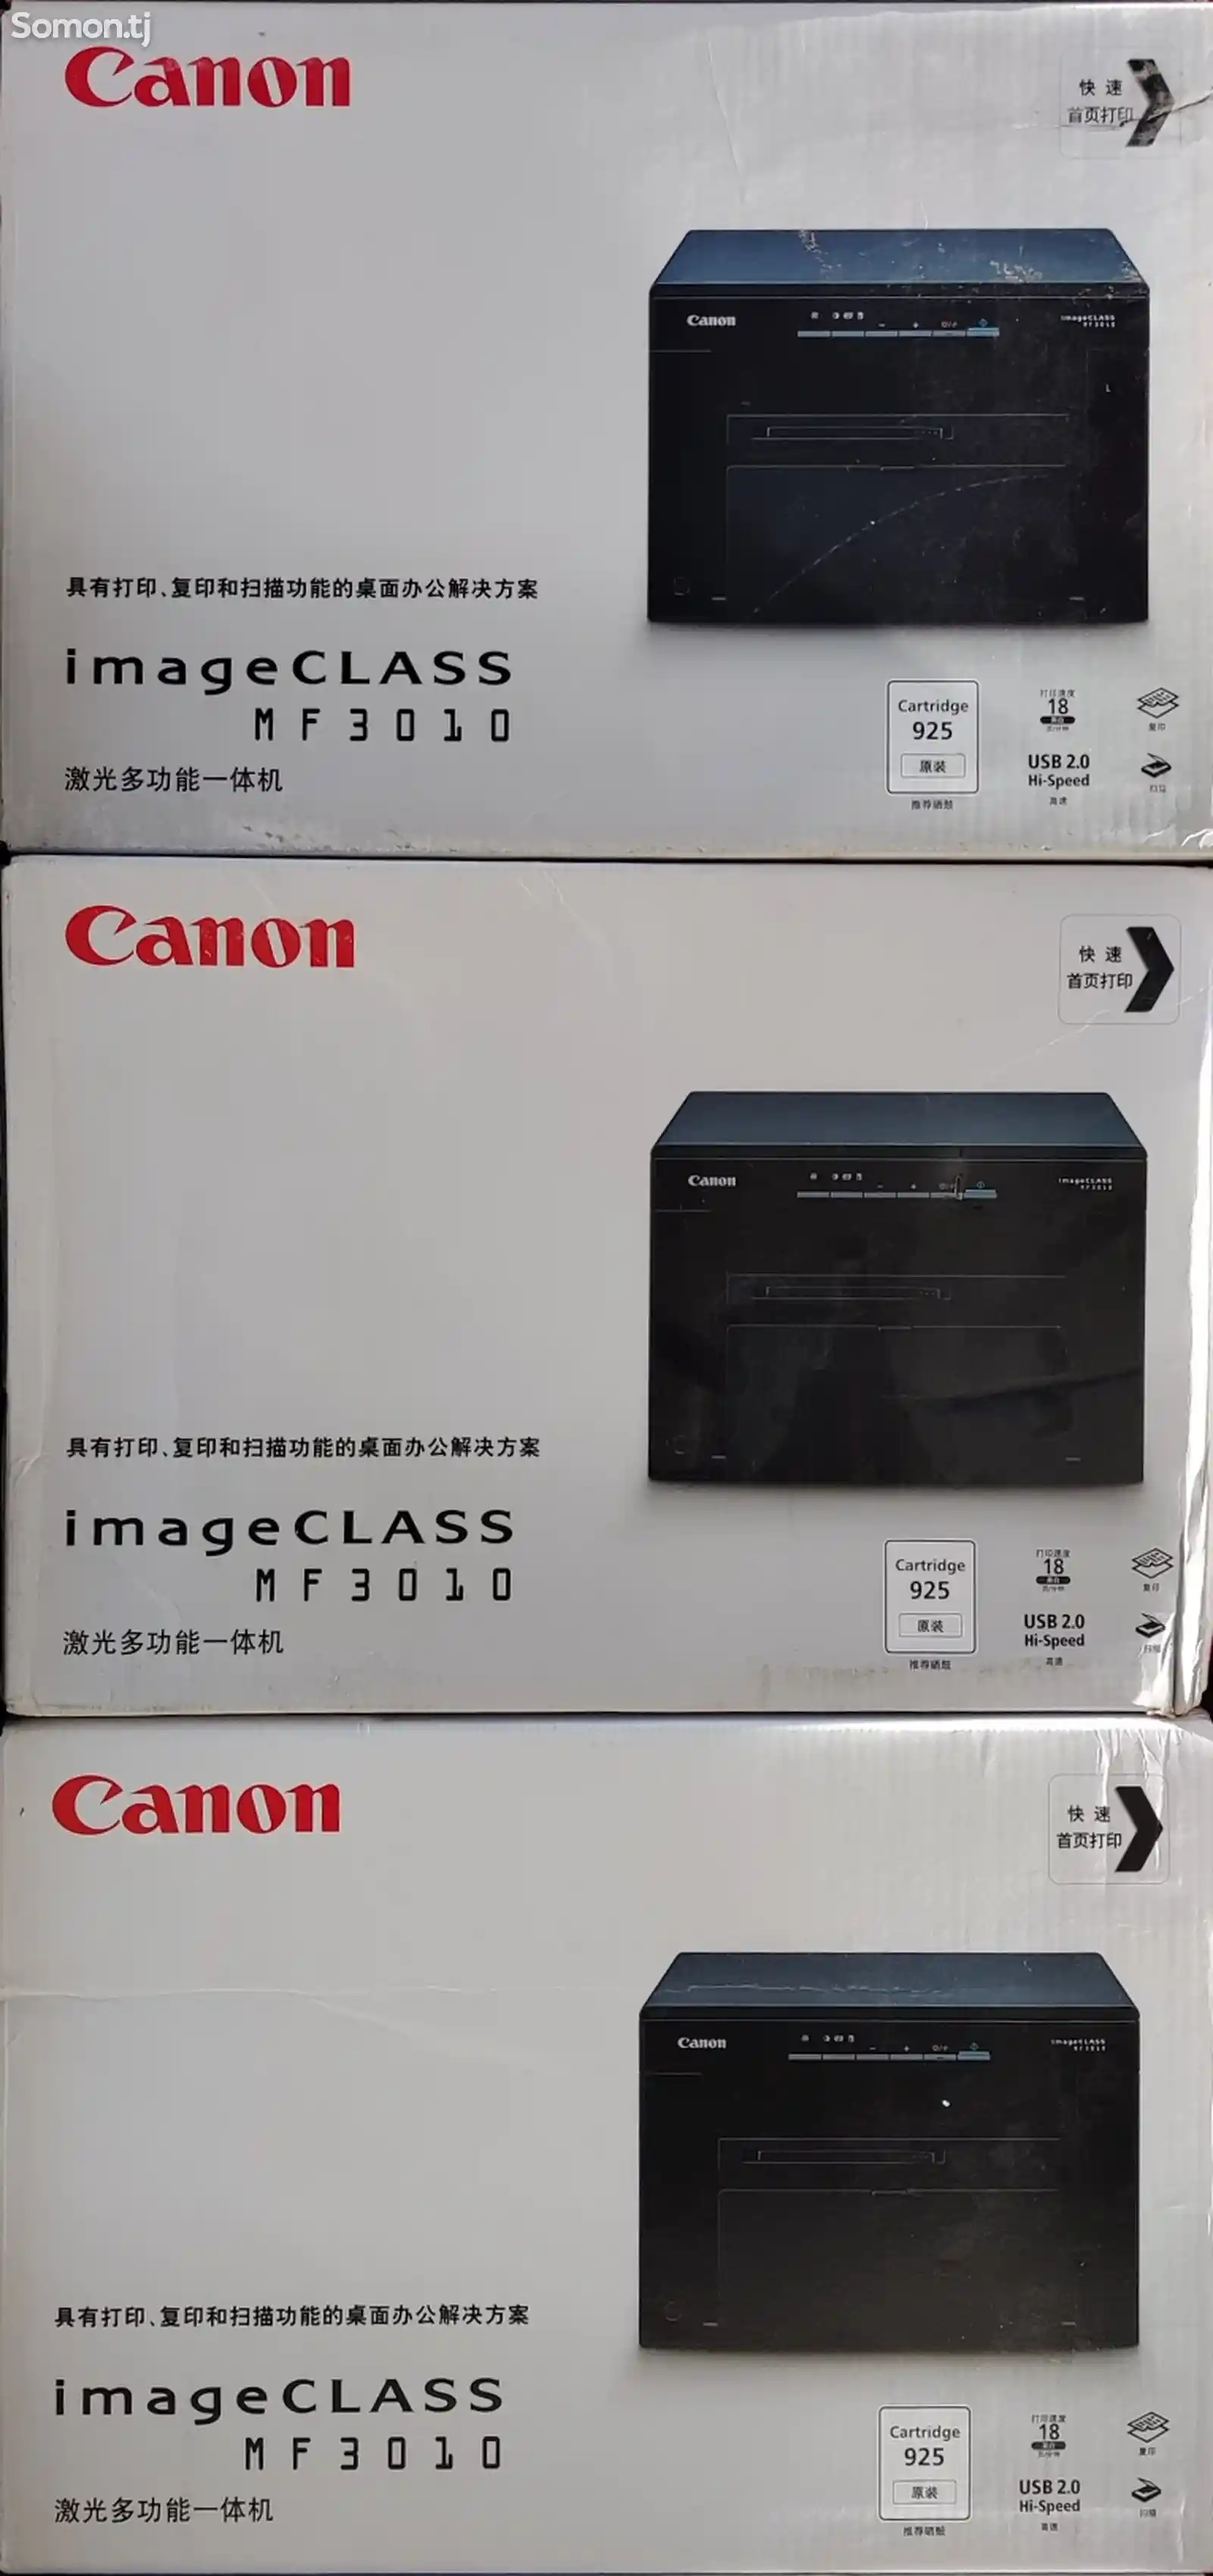 Принтер Canon ImageClass mf3010-1